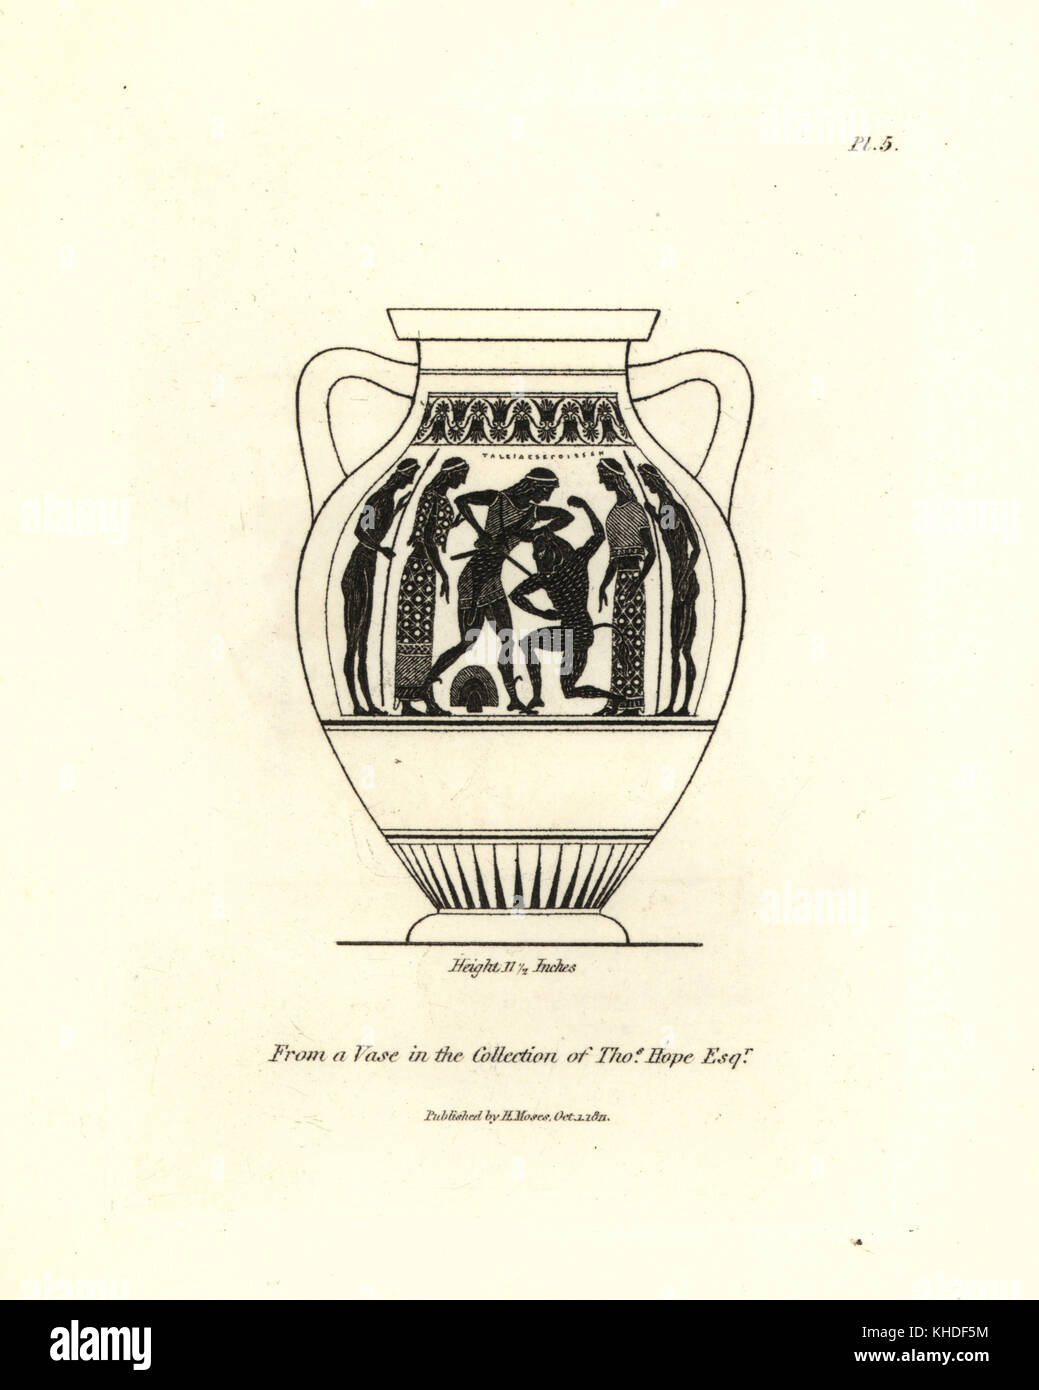 Darstellung des Theseus den Minotaurus getötet aus einer Vase in der Sammlung von Thomas hoffen. Kupferstich von Henry Mose aus einer Sammlung von antiken Vasen, Altäre, etc., London, 1814. Stockfoto